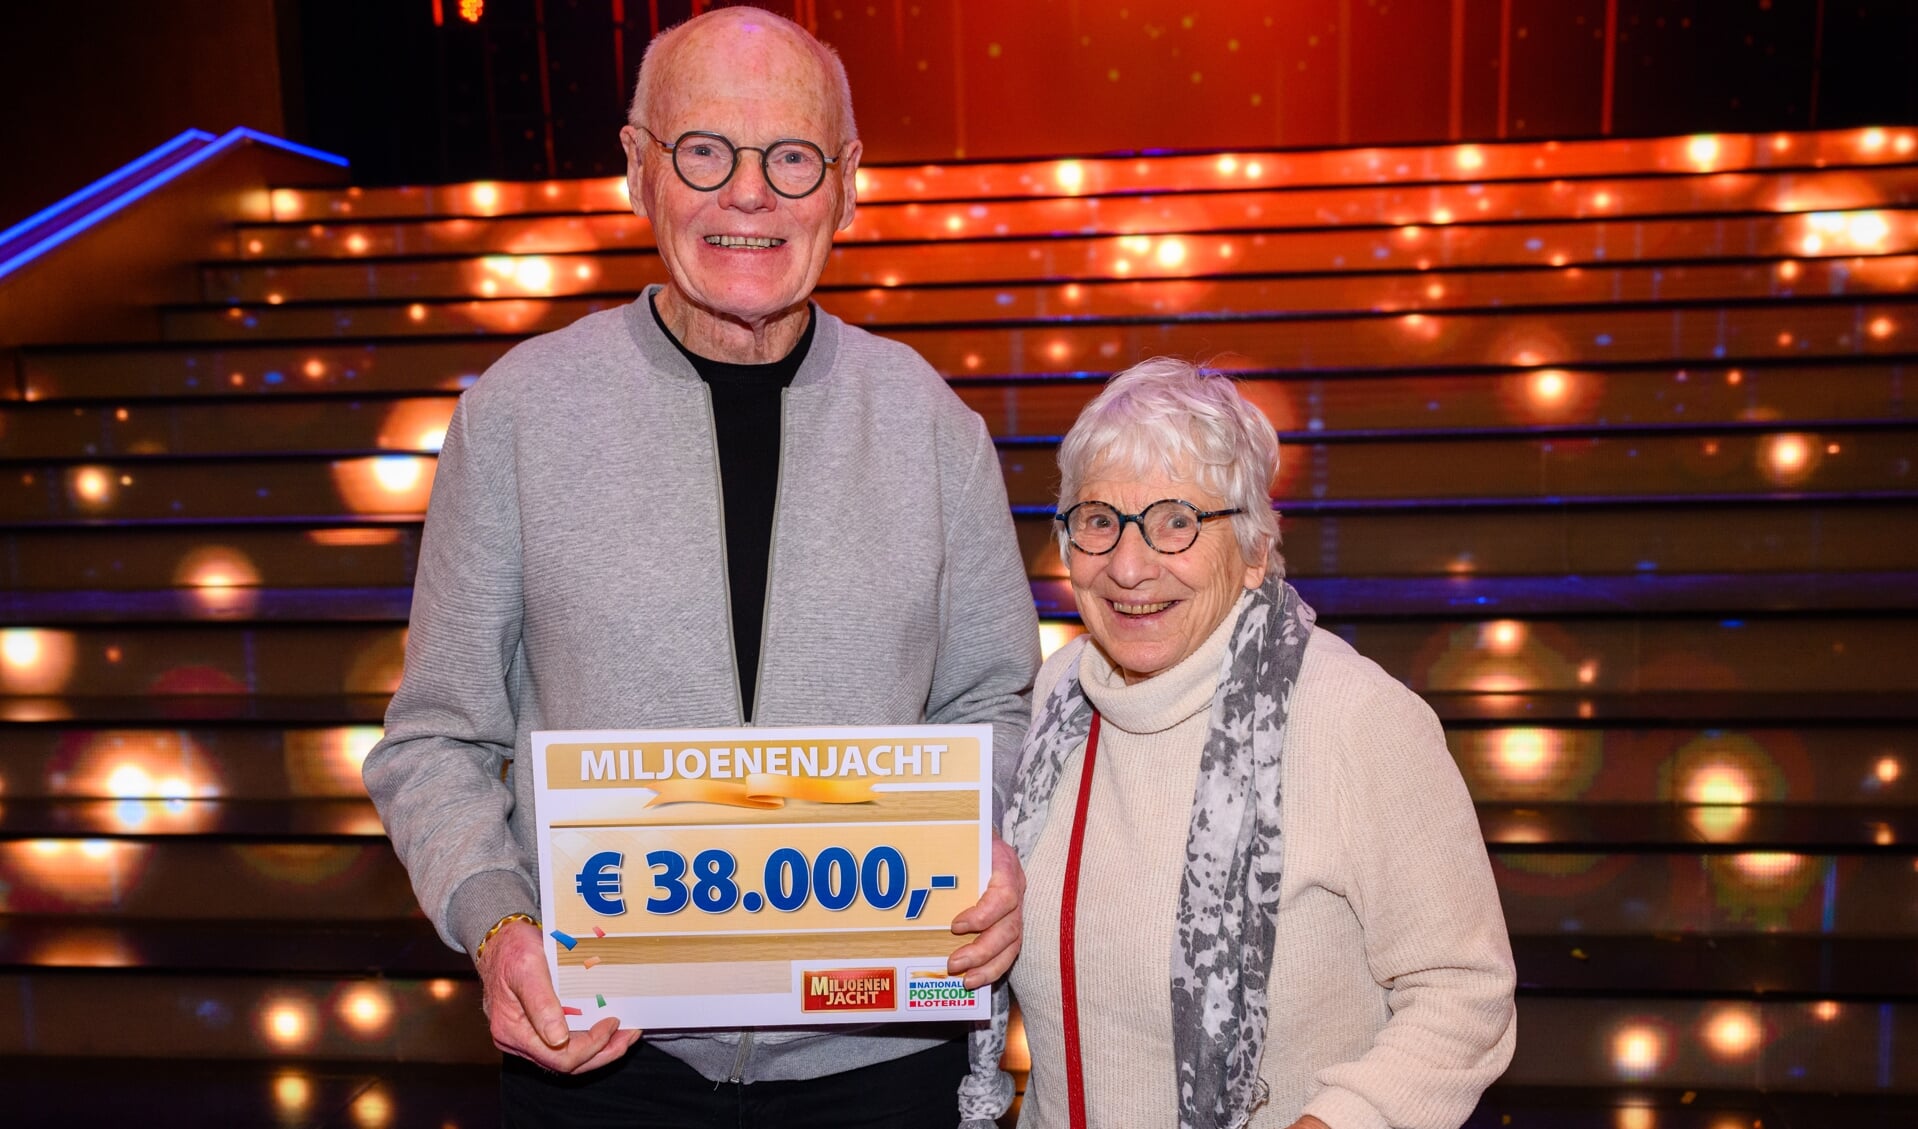 Gerrit uit Ruurlo (met zijn vrouw Bep) viel in de prijzen; op de tribune bij Miljoenenjacht won hij 38.000 euro. Foto: Roy Beusker